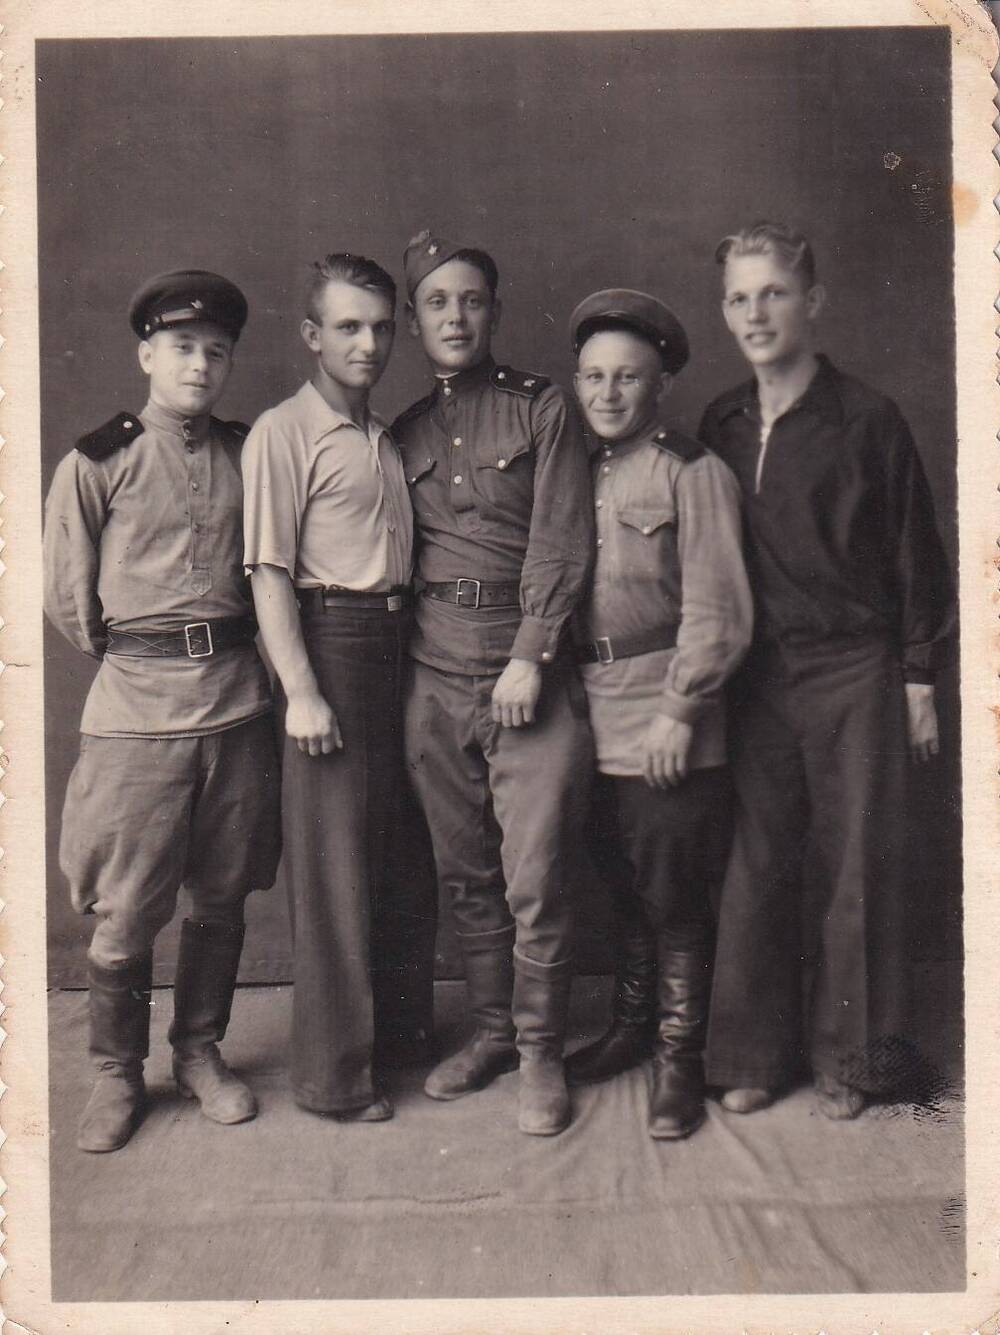 Фото ч/б групповое в рост. Бурлака Николай Петрович – слева второй, г. Семипалатинск. 1950 г.